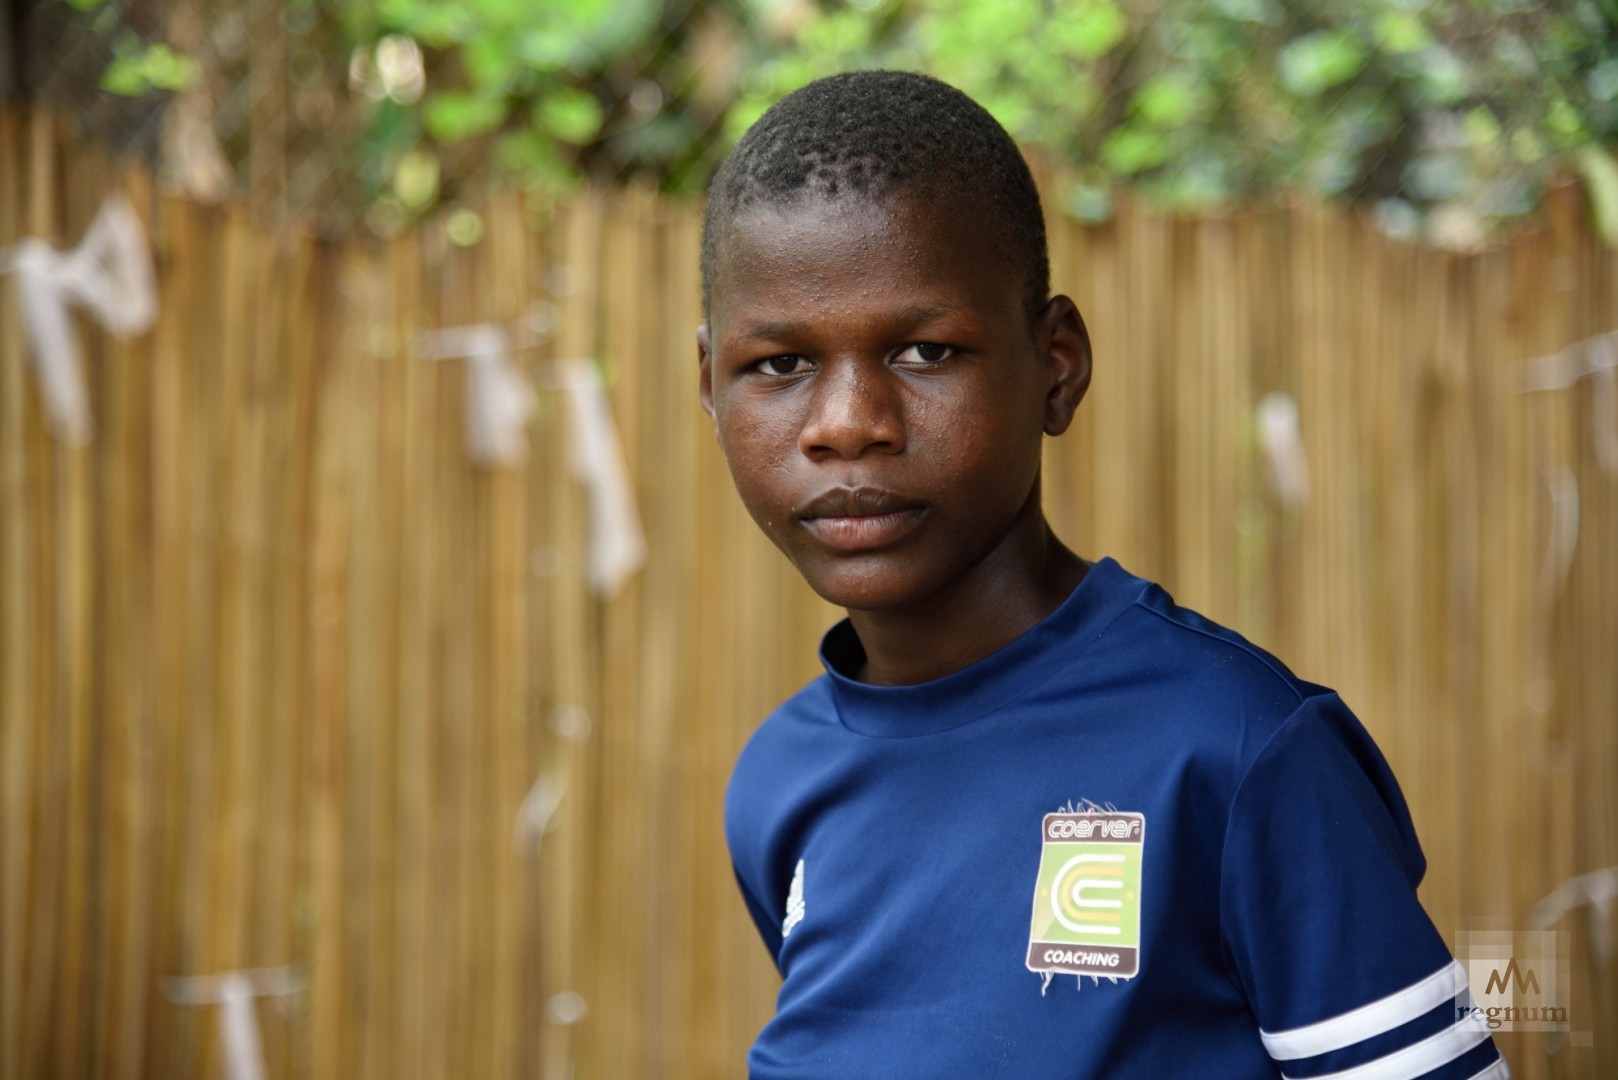 Ньянгома (16 лет), имеет аутическое расстройство, в результате которого девушка сильно отстаёт в развитии, не разговаривает и не обслуживает себя самостоятельно. Window of Life, Масинди, Уганда